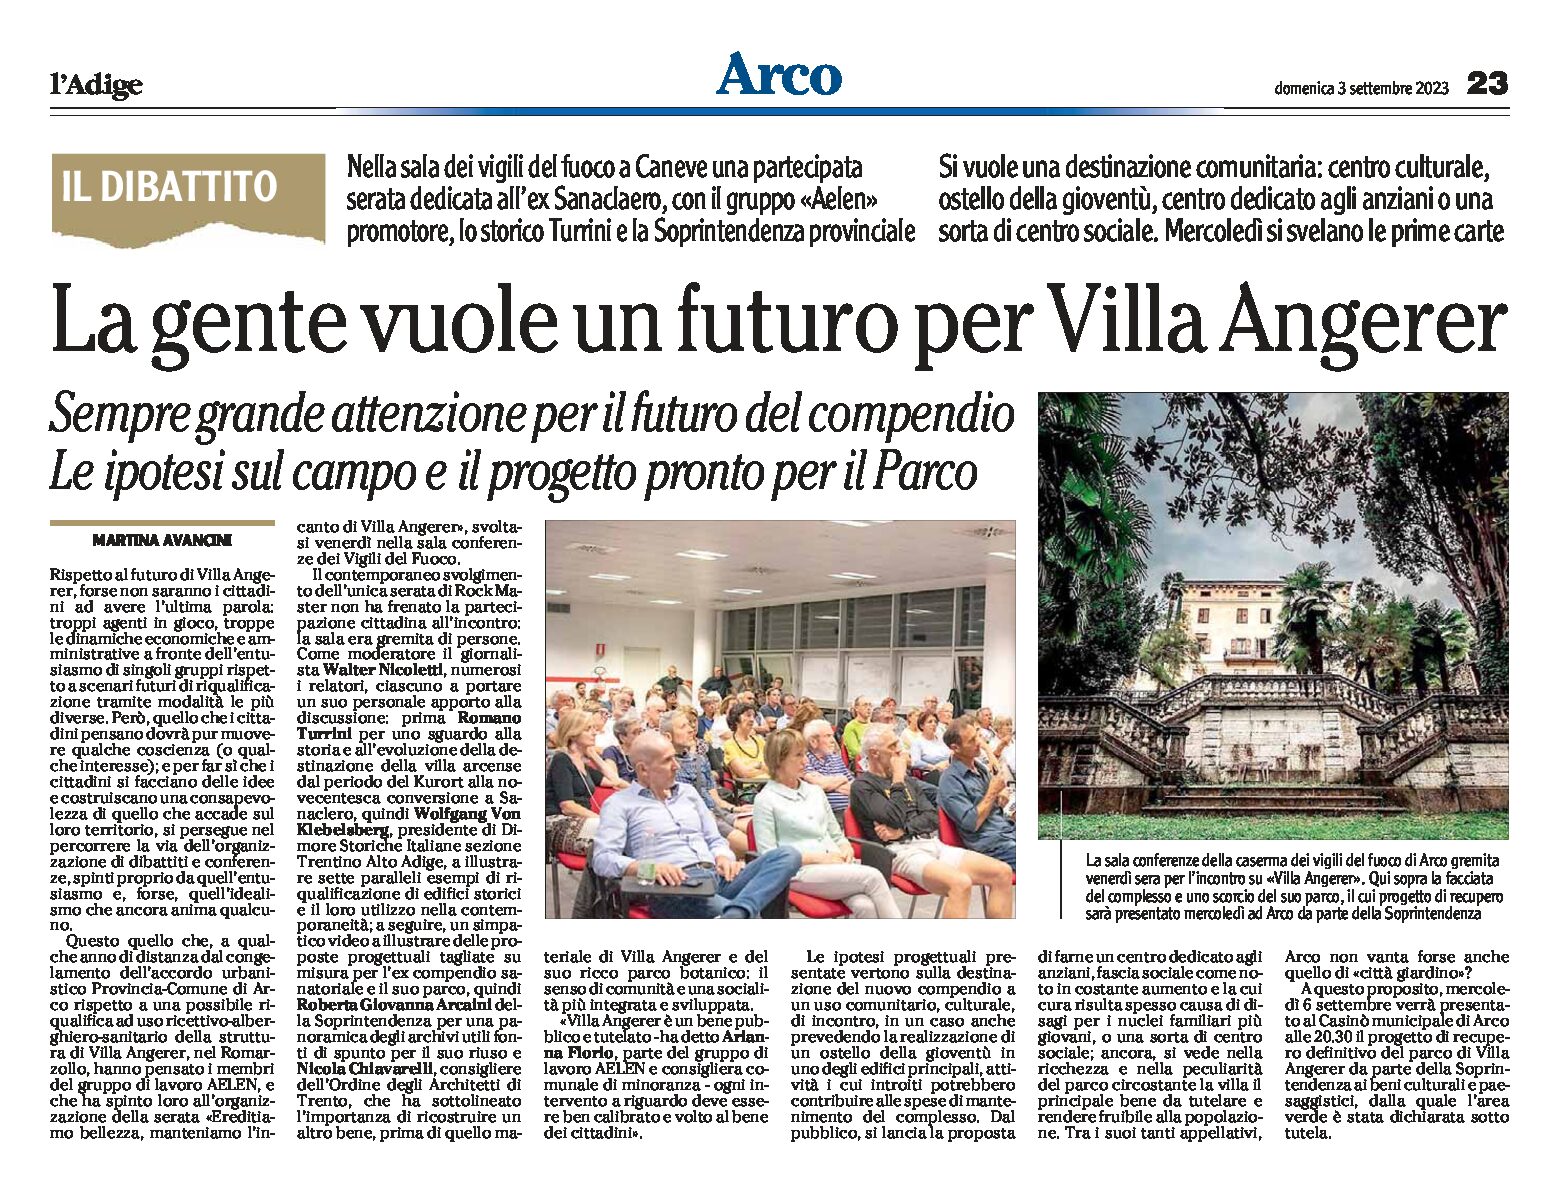 Arco, Caneve: serata per il futuro di Villa Angerer